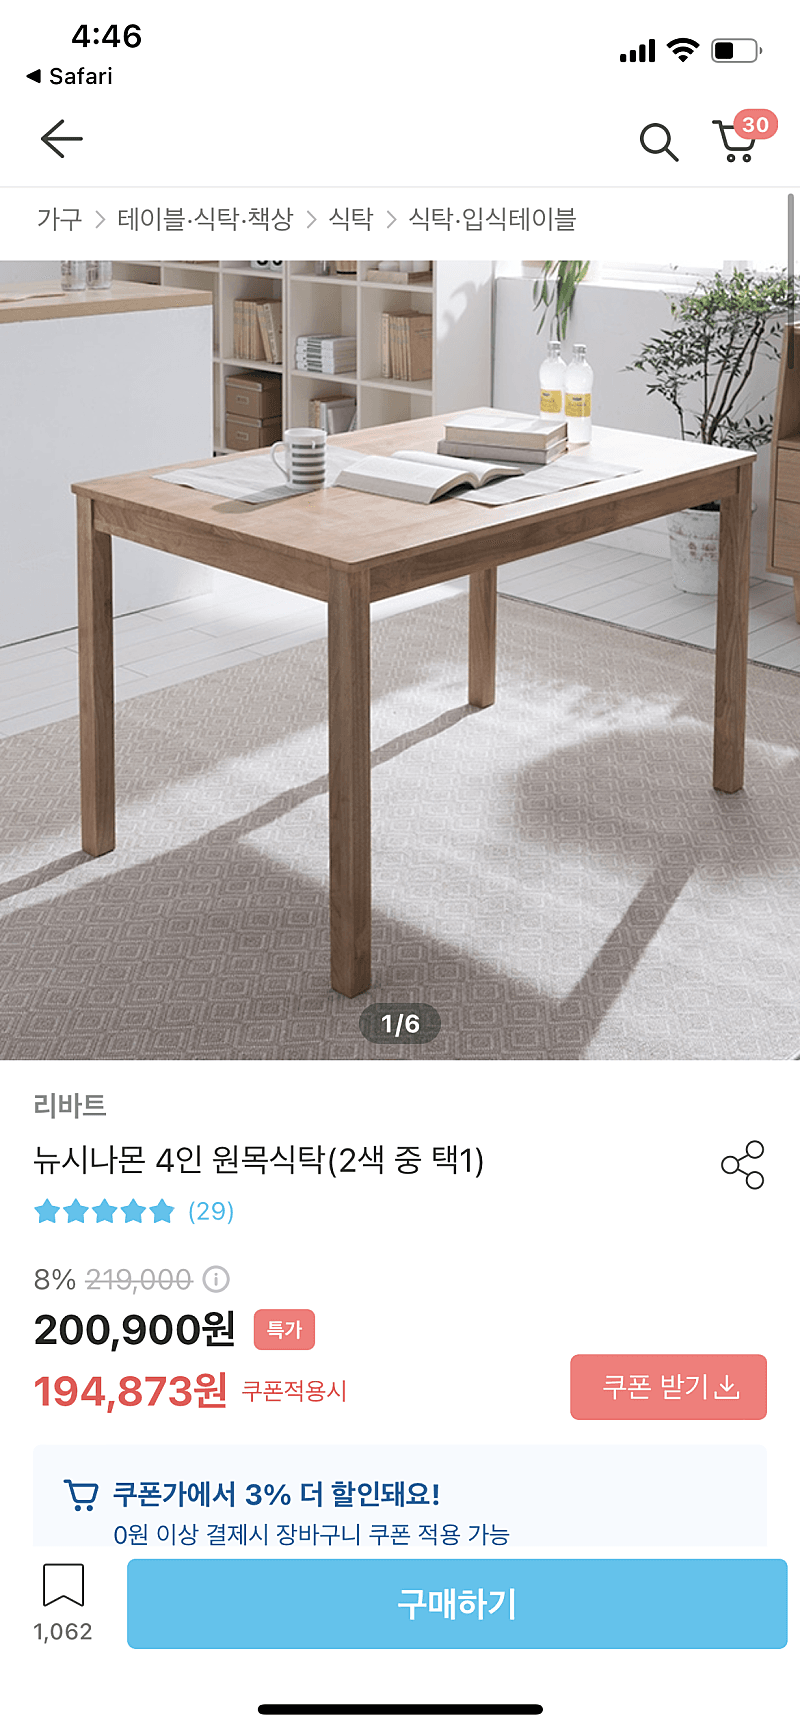 (새상품/가격 인하!!) 리바트 원목 테이블 세트